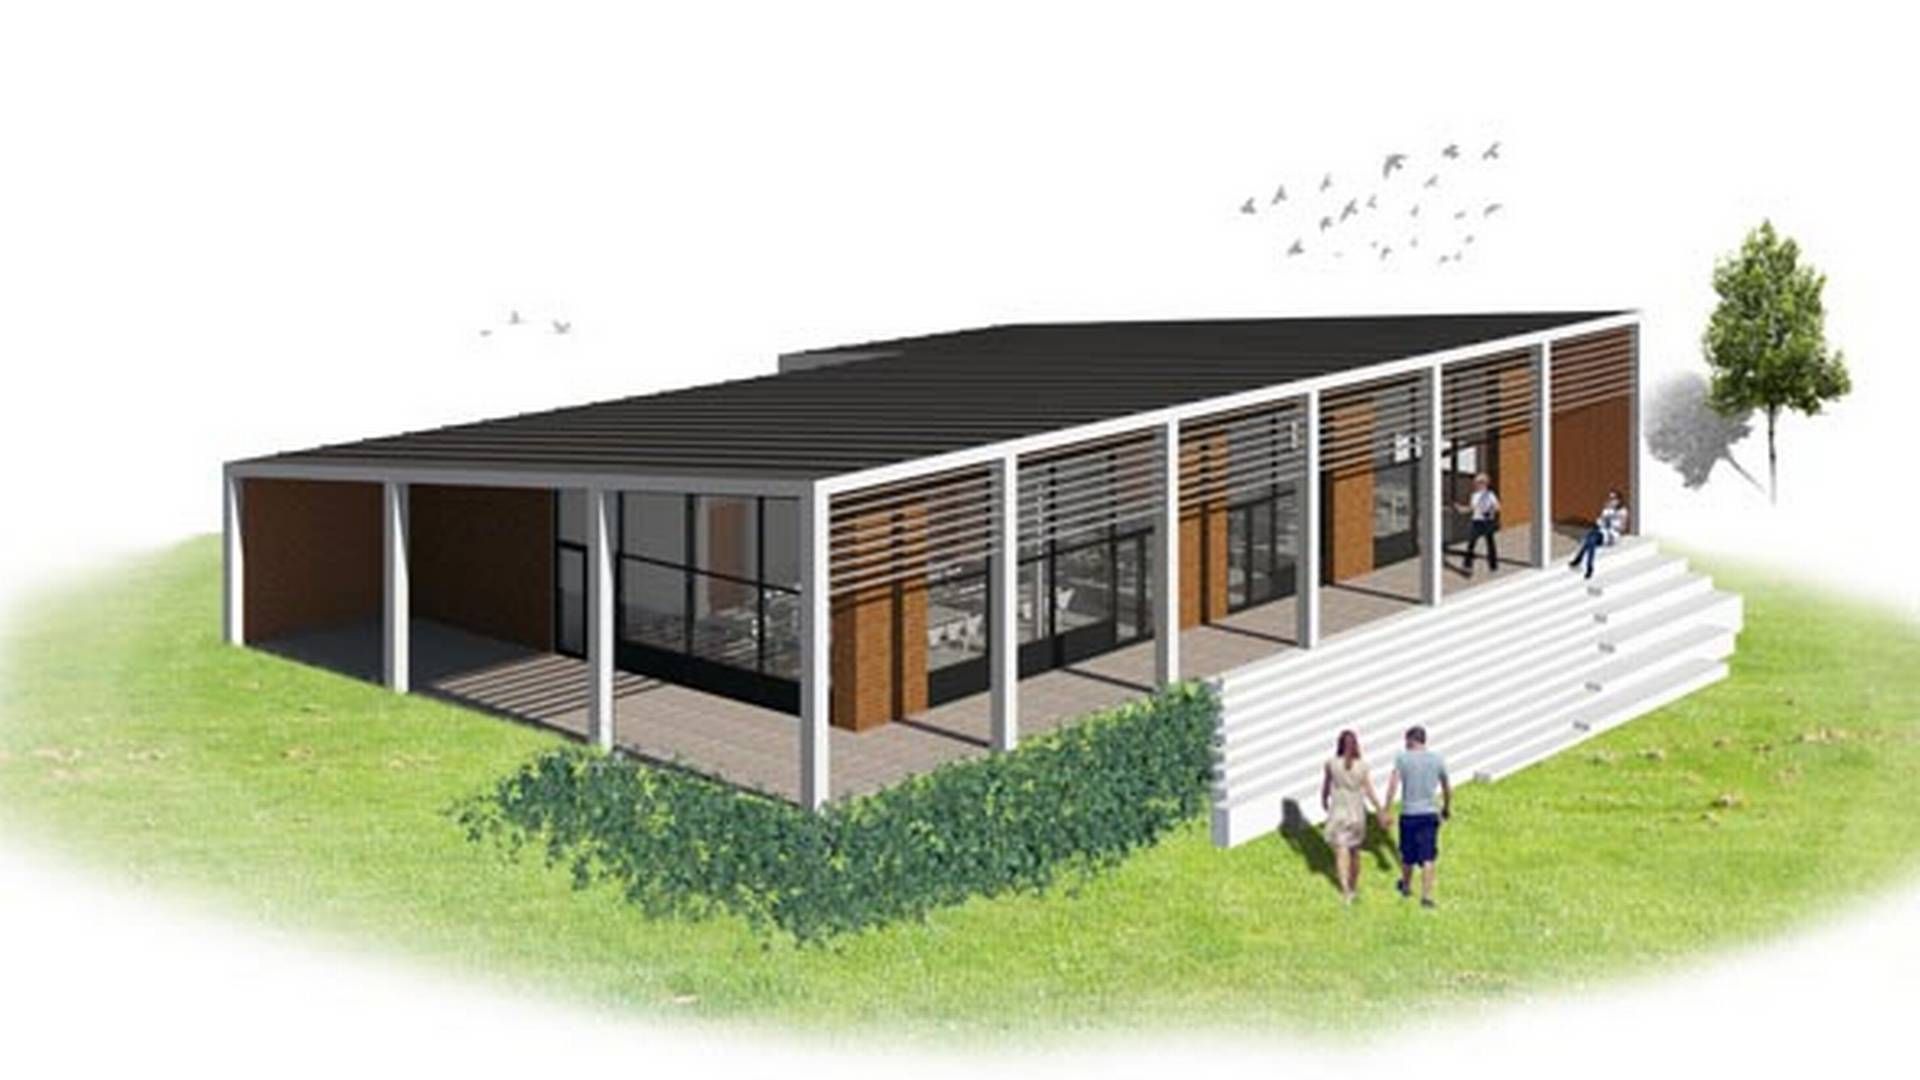 Visualisering af, hvordan fælleshuset skal se ud. | Foto: PR-visualisering